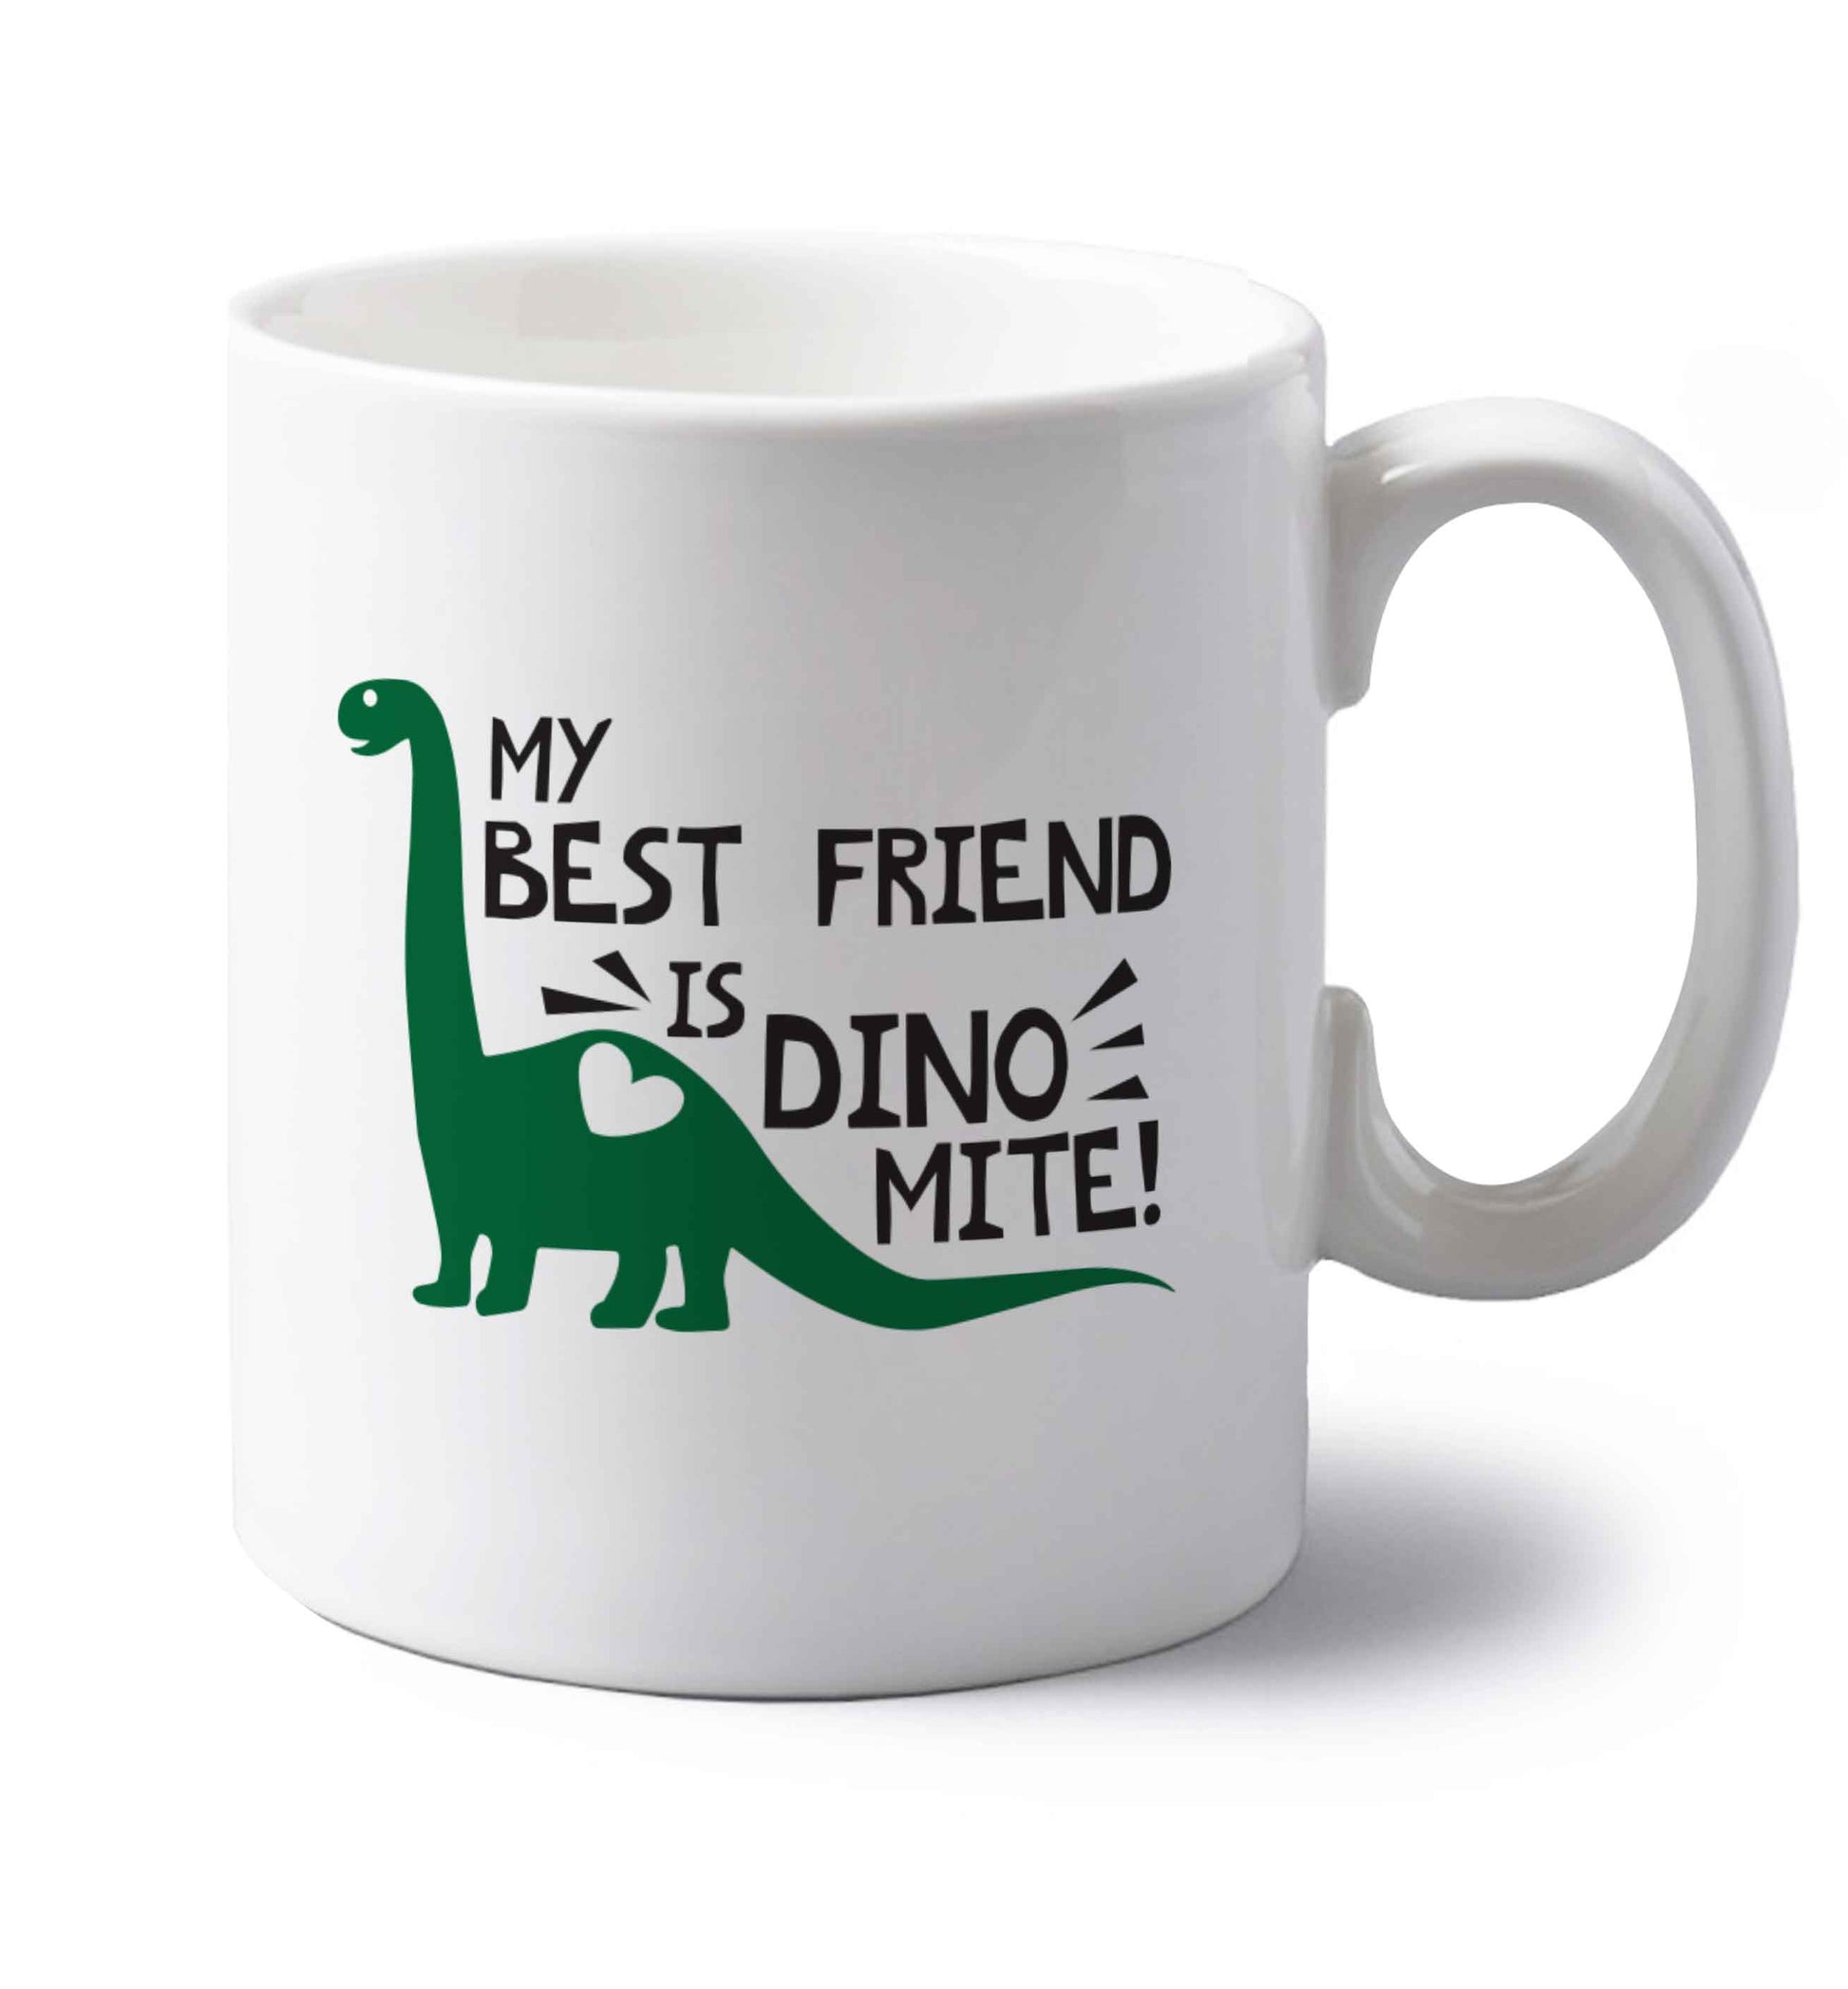 My best friend is dinomite! left handed white ceramic mug 